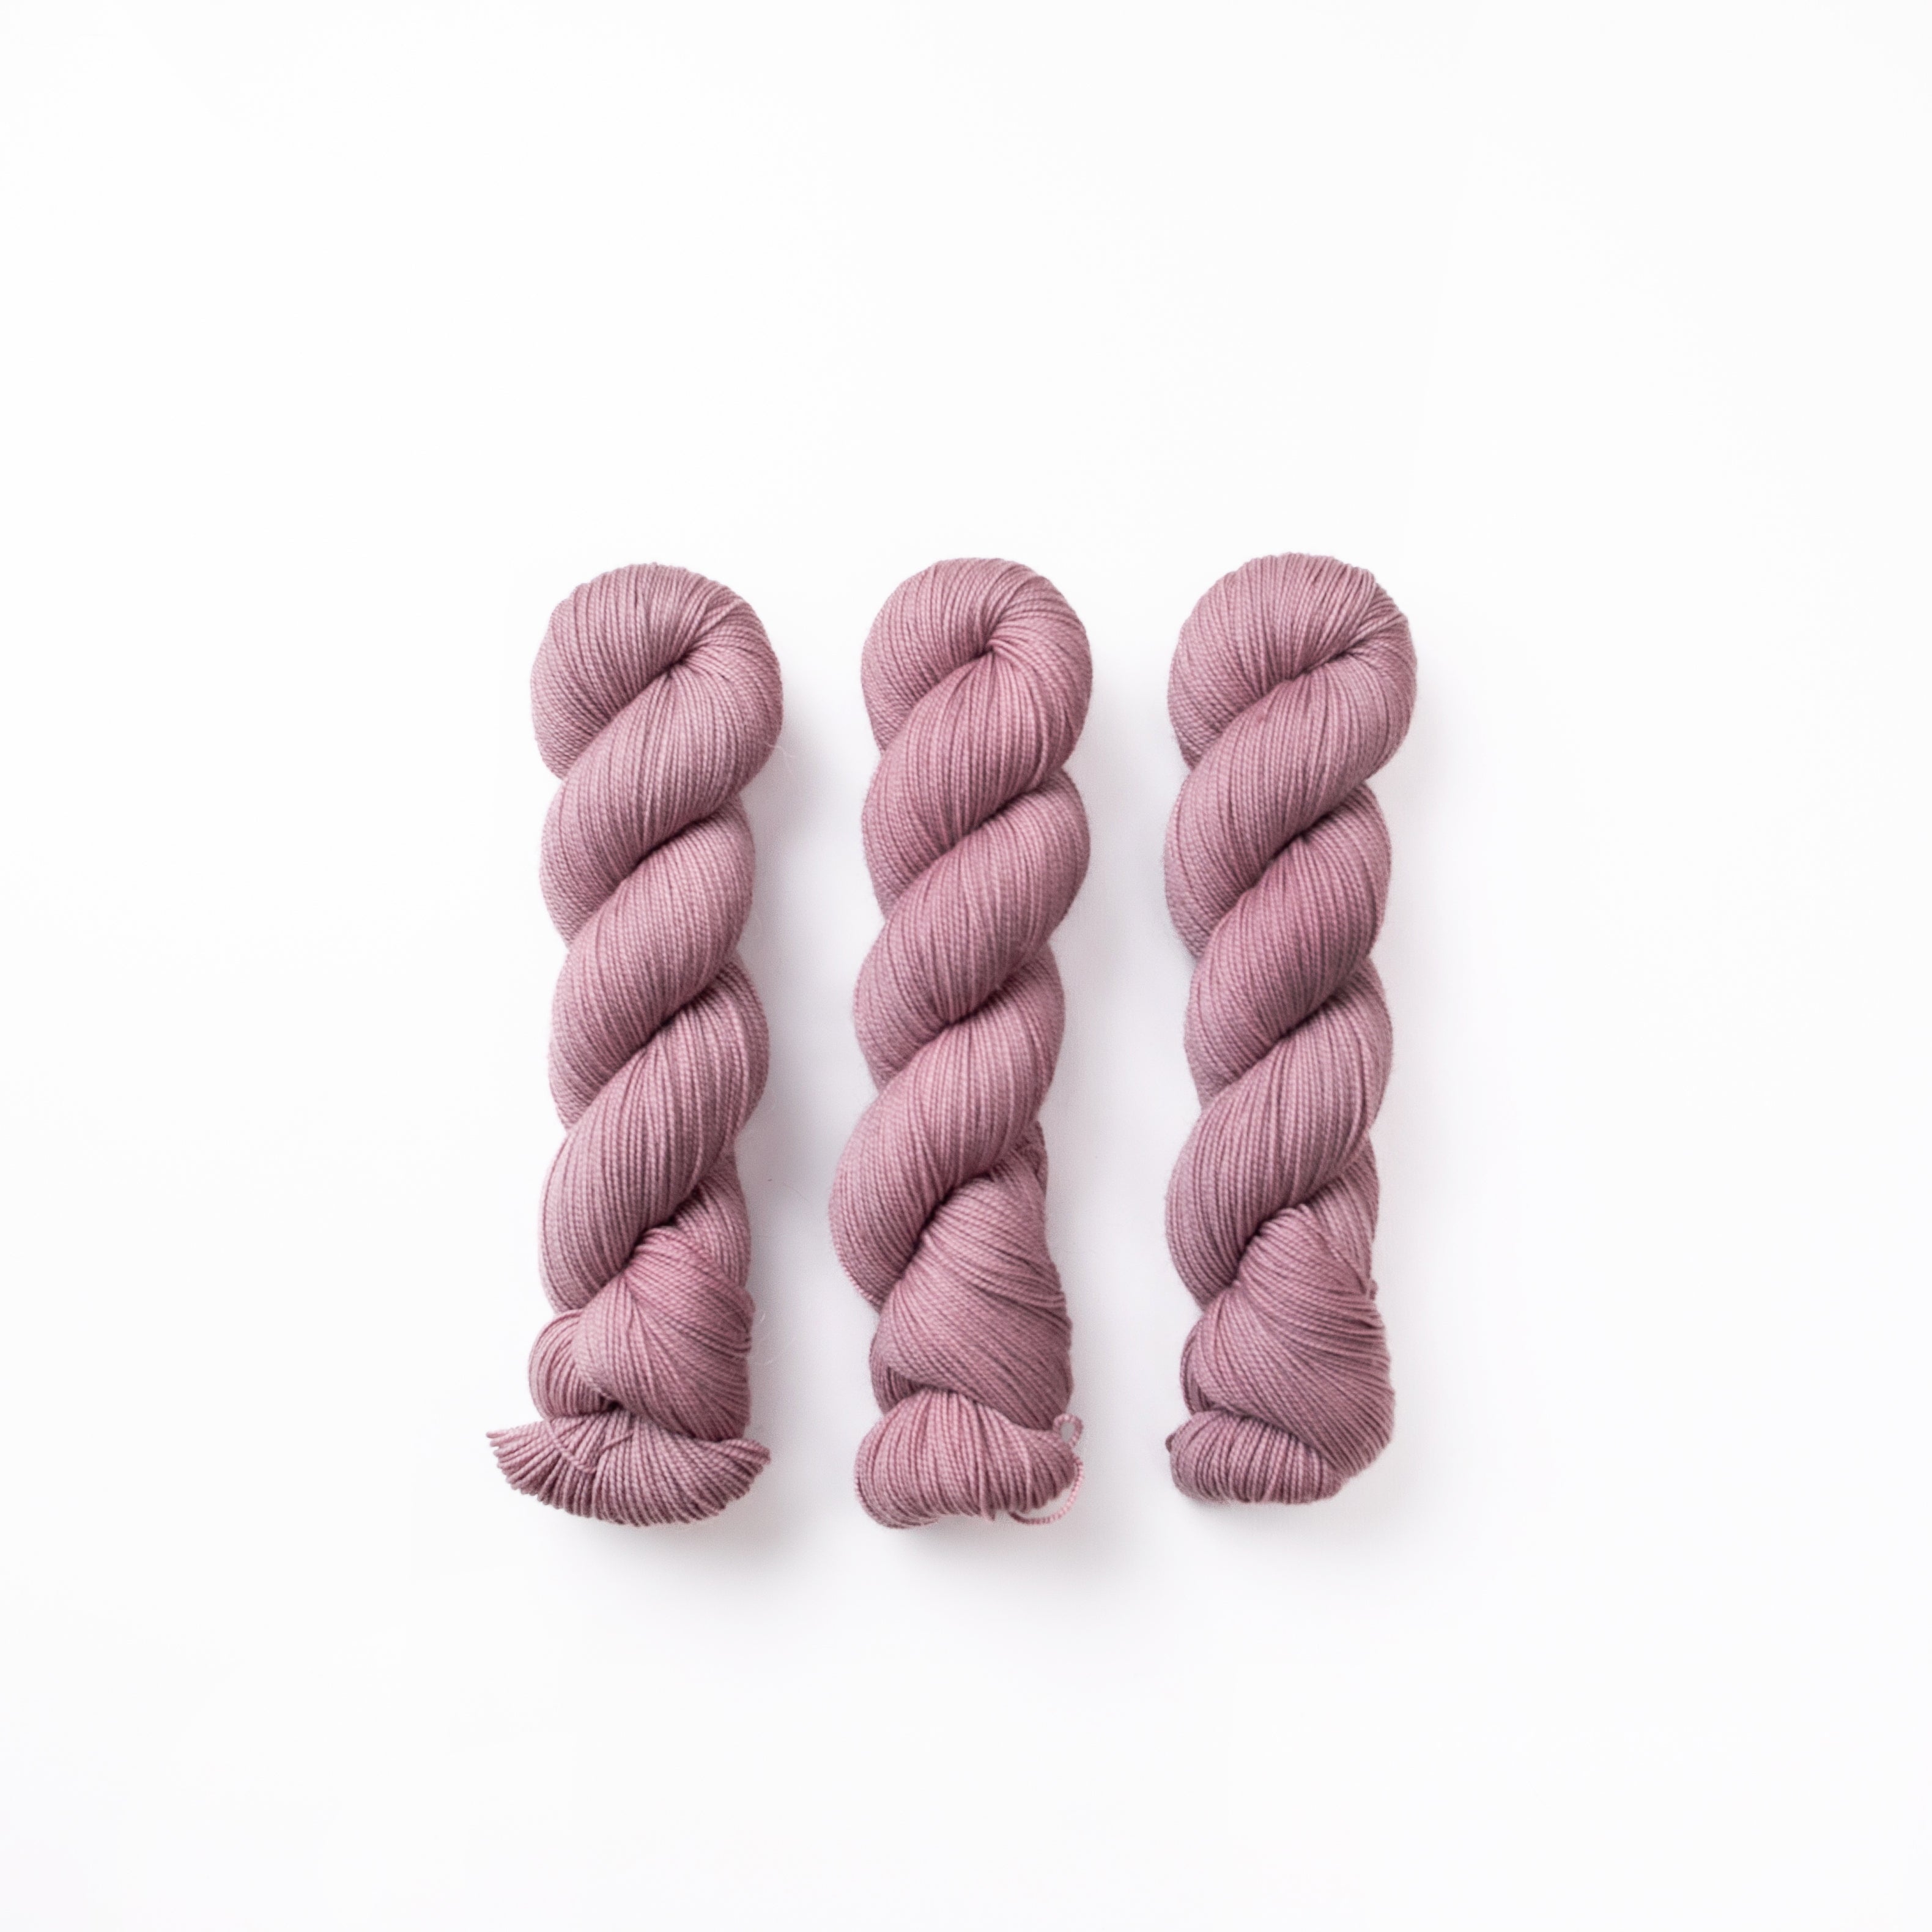 その他の毛糸 – Bon voyage hand dyed yarn